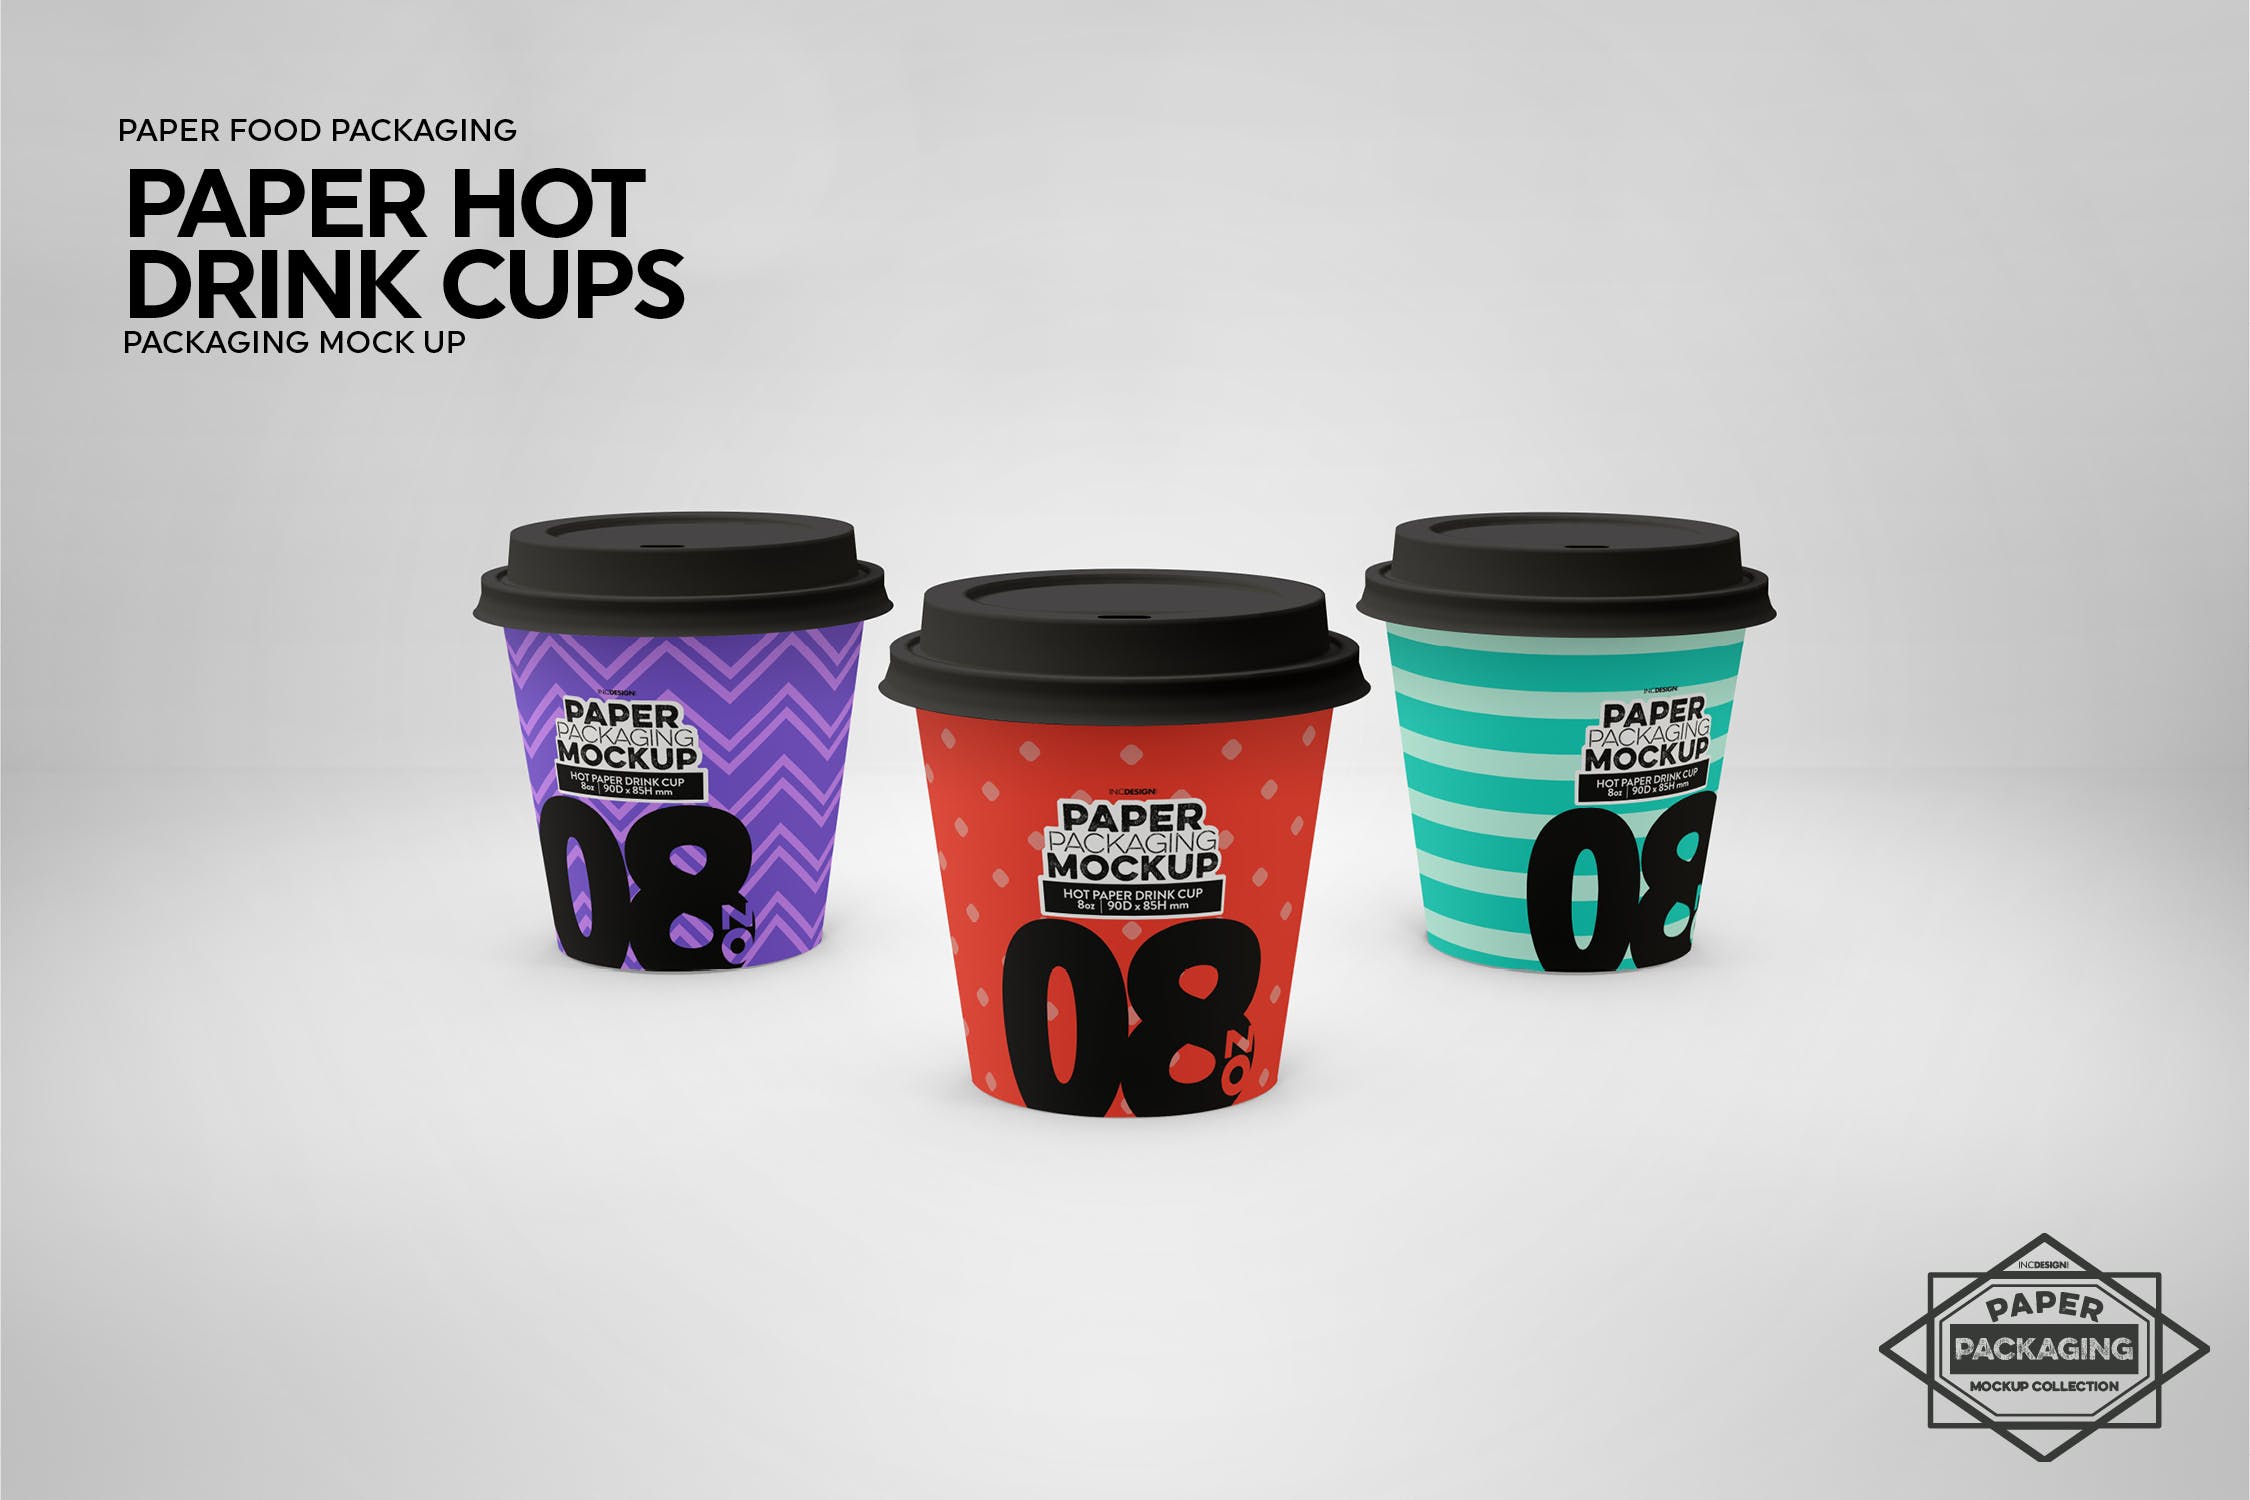 热饮一次性纸杯外观设计16设计网精选 Paper Hot Drink Cups Packaging Mockup插图(14)